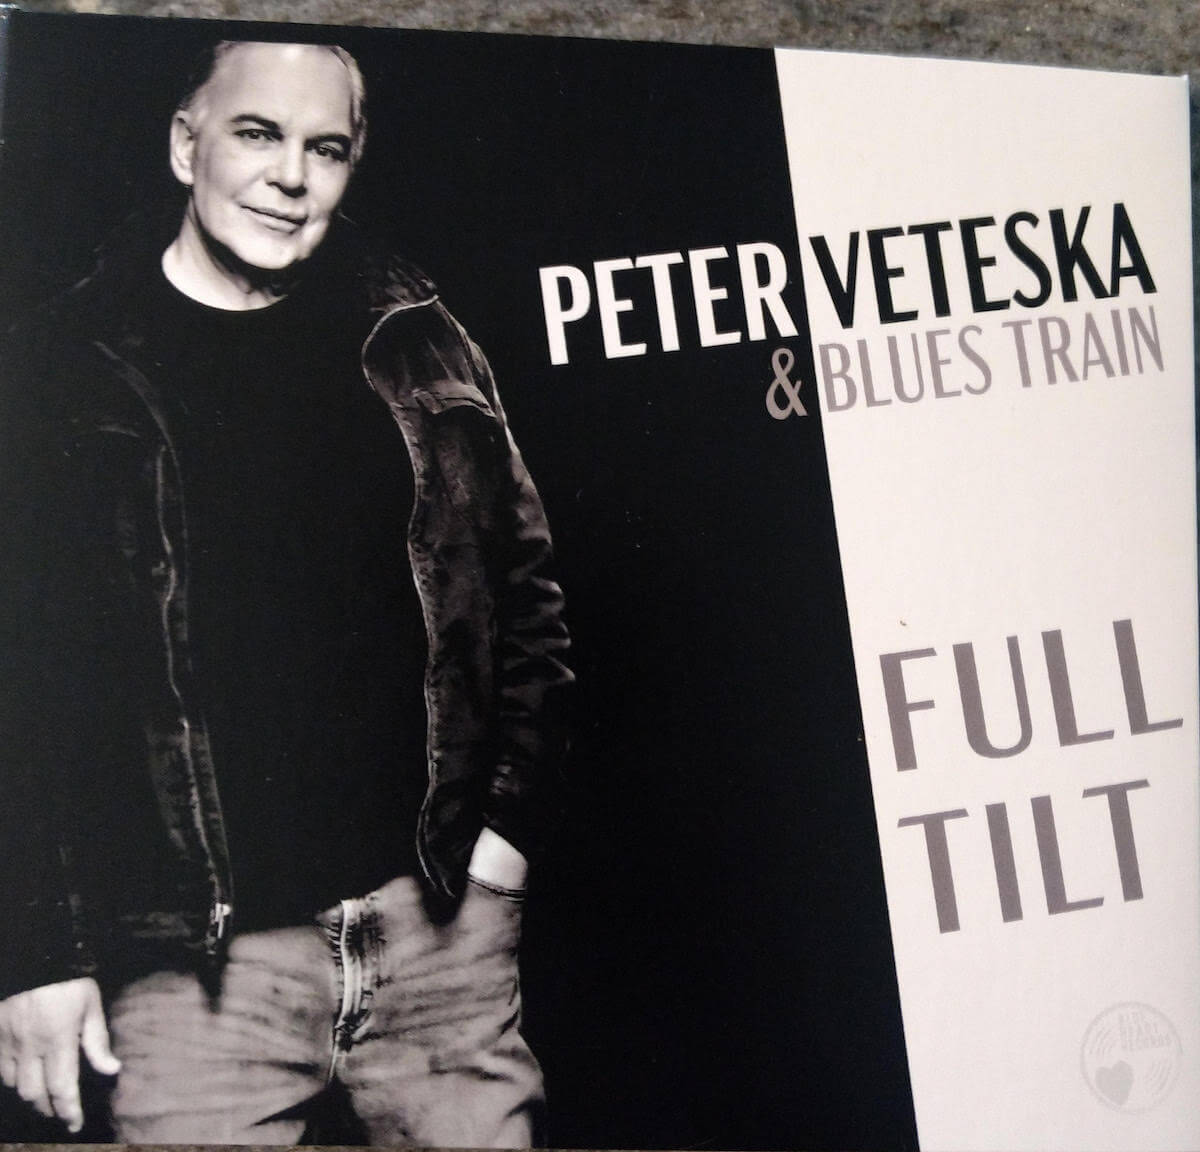 Peter Veteska Full Tilt